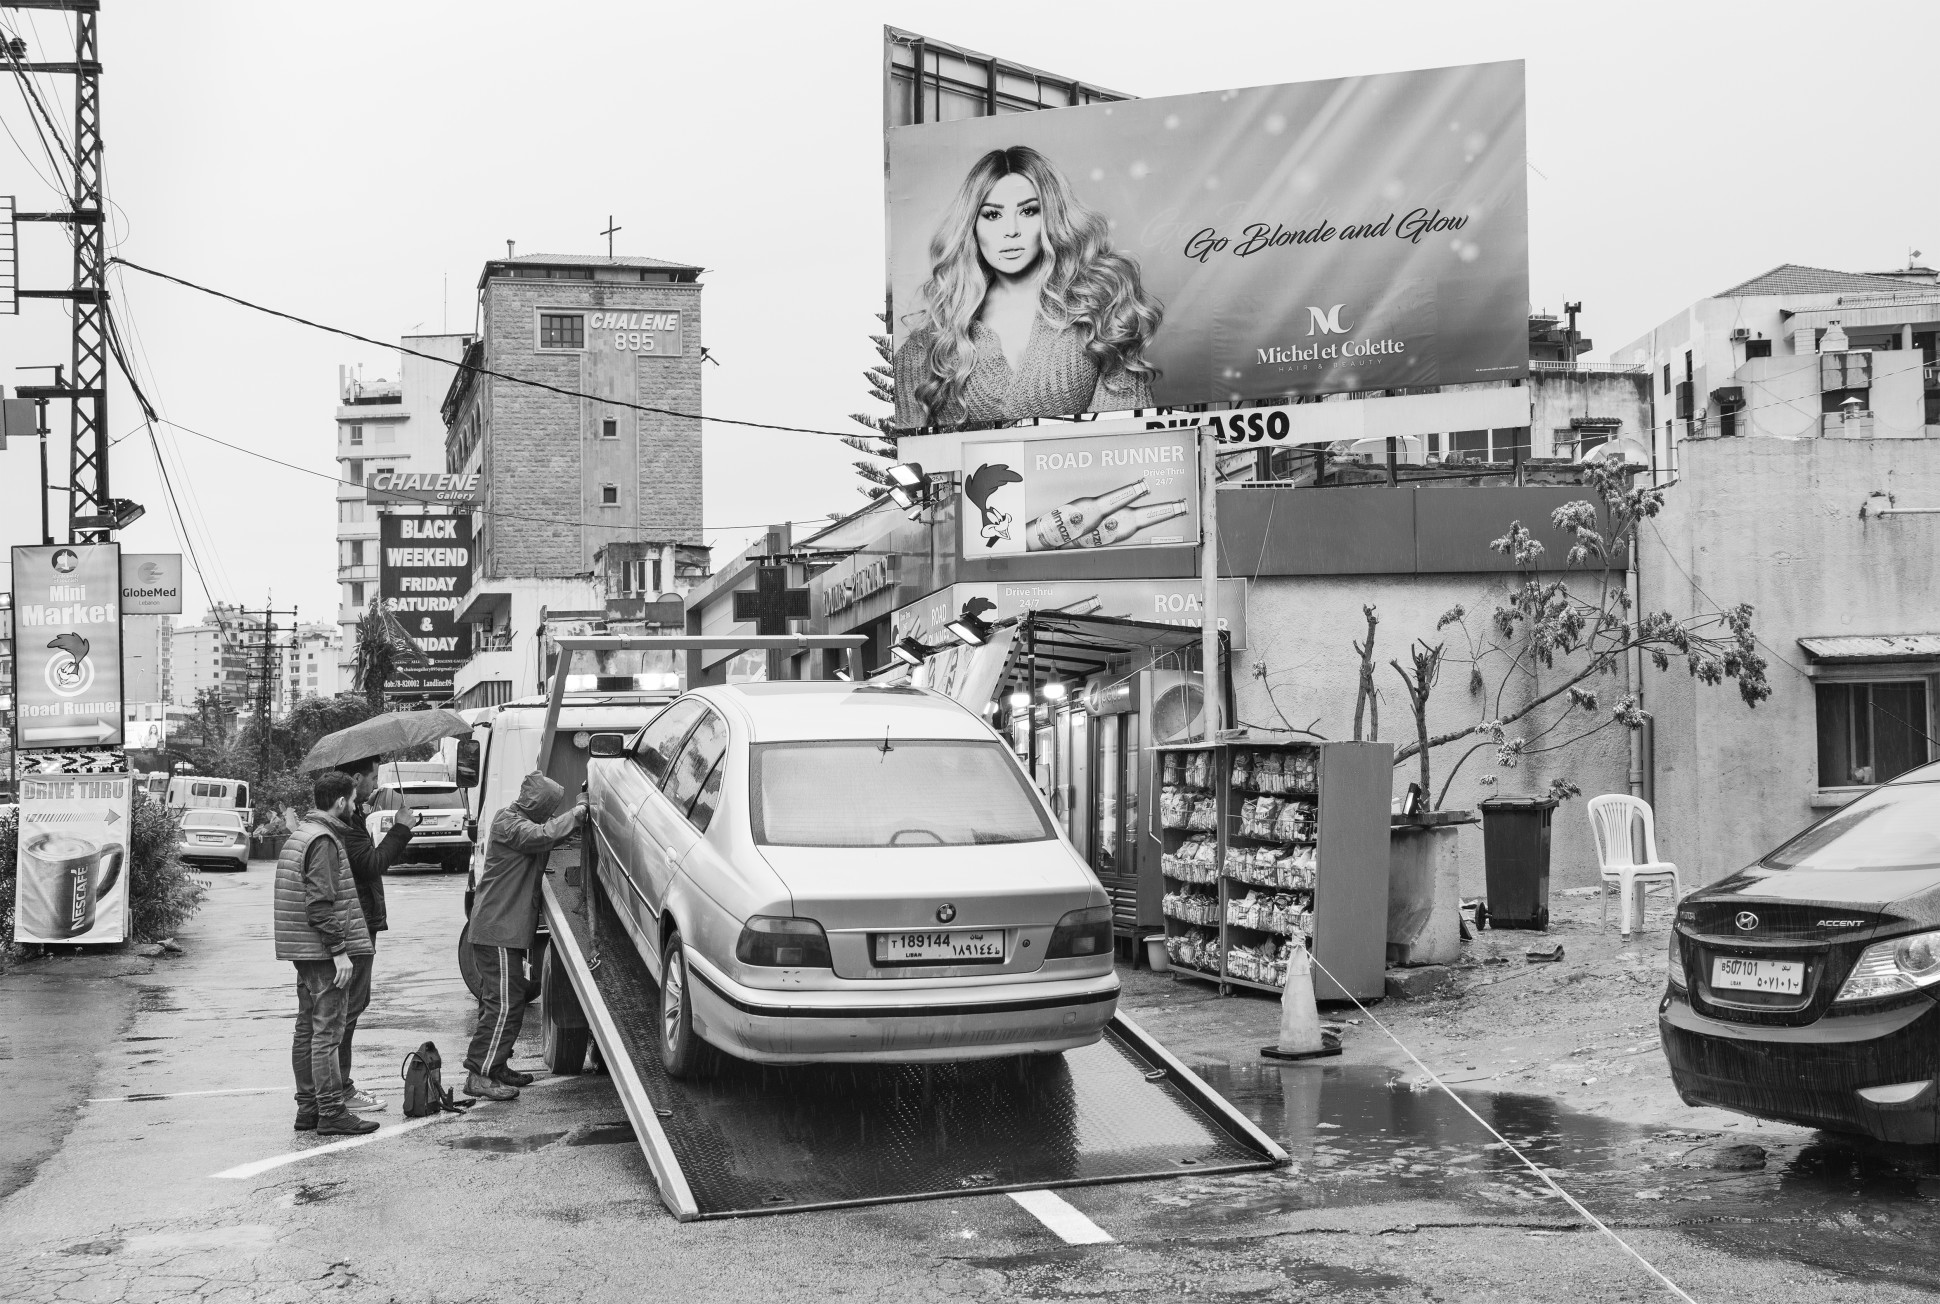 Go Blonde. Beirut, Lebanon, 2018 Archival fiber inkjet print in artist frame 41 x 61 cm. / 16 x 24 in. (unframed dims) Edition 1 of 3 + AP